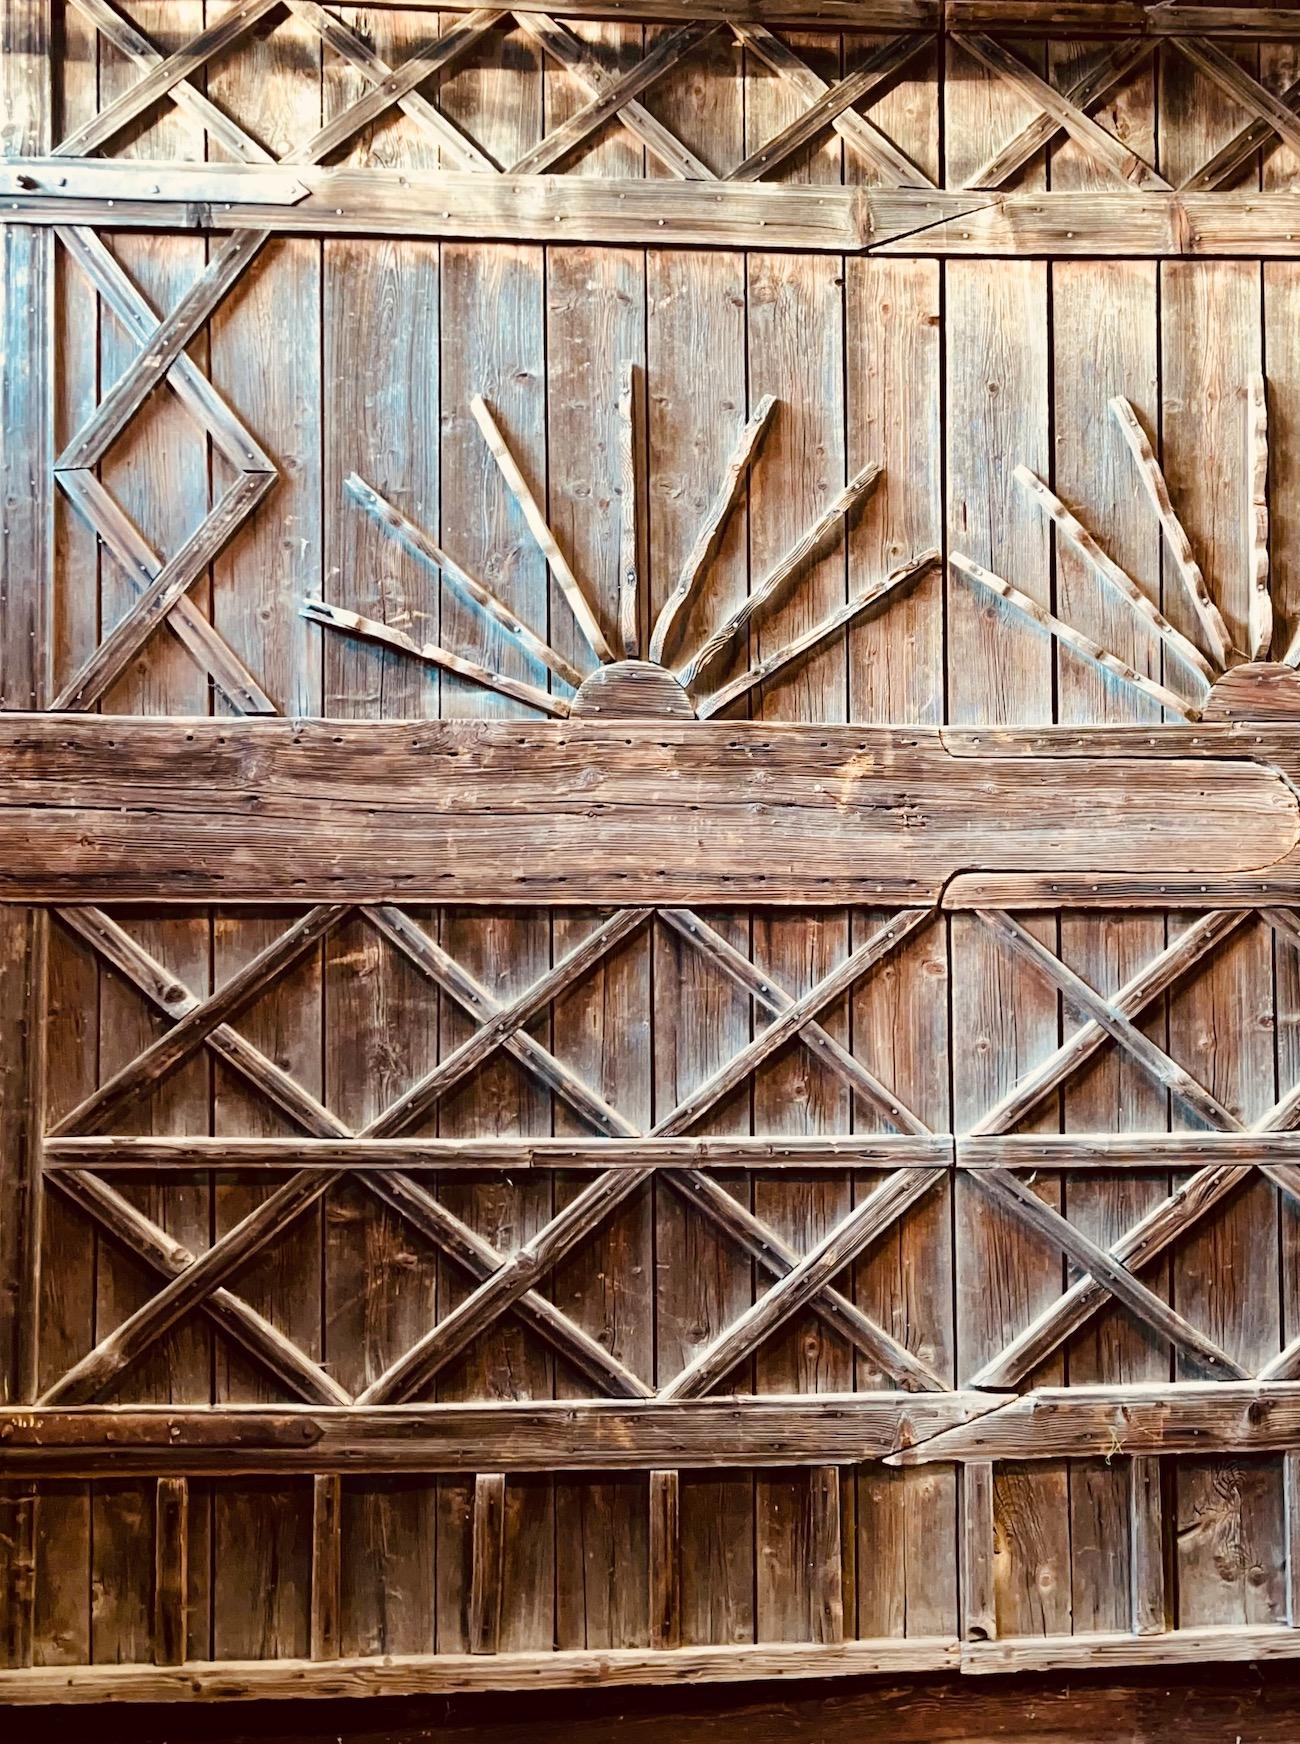 A  belle paire de très grandes portes de grange en bois dur à emboîtement qui ont été stockées dans une grange d'A.C. New C. pendant de nombreuses années. Chaque porte est décorée de façon très complexe et magnifique sur ses faces intérieures avec